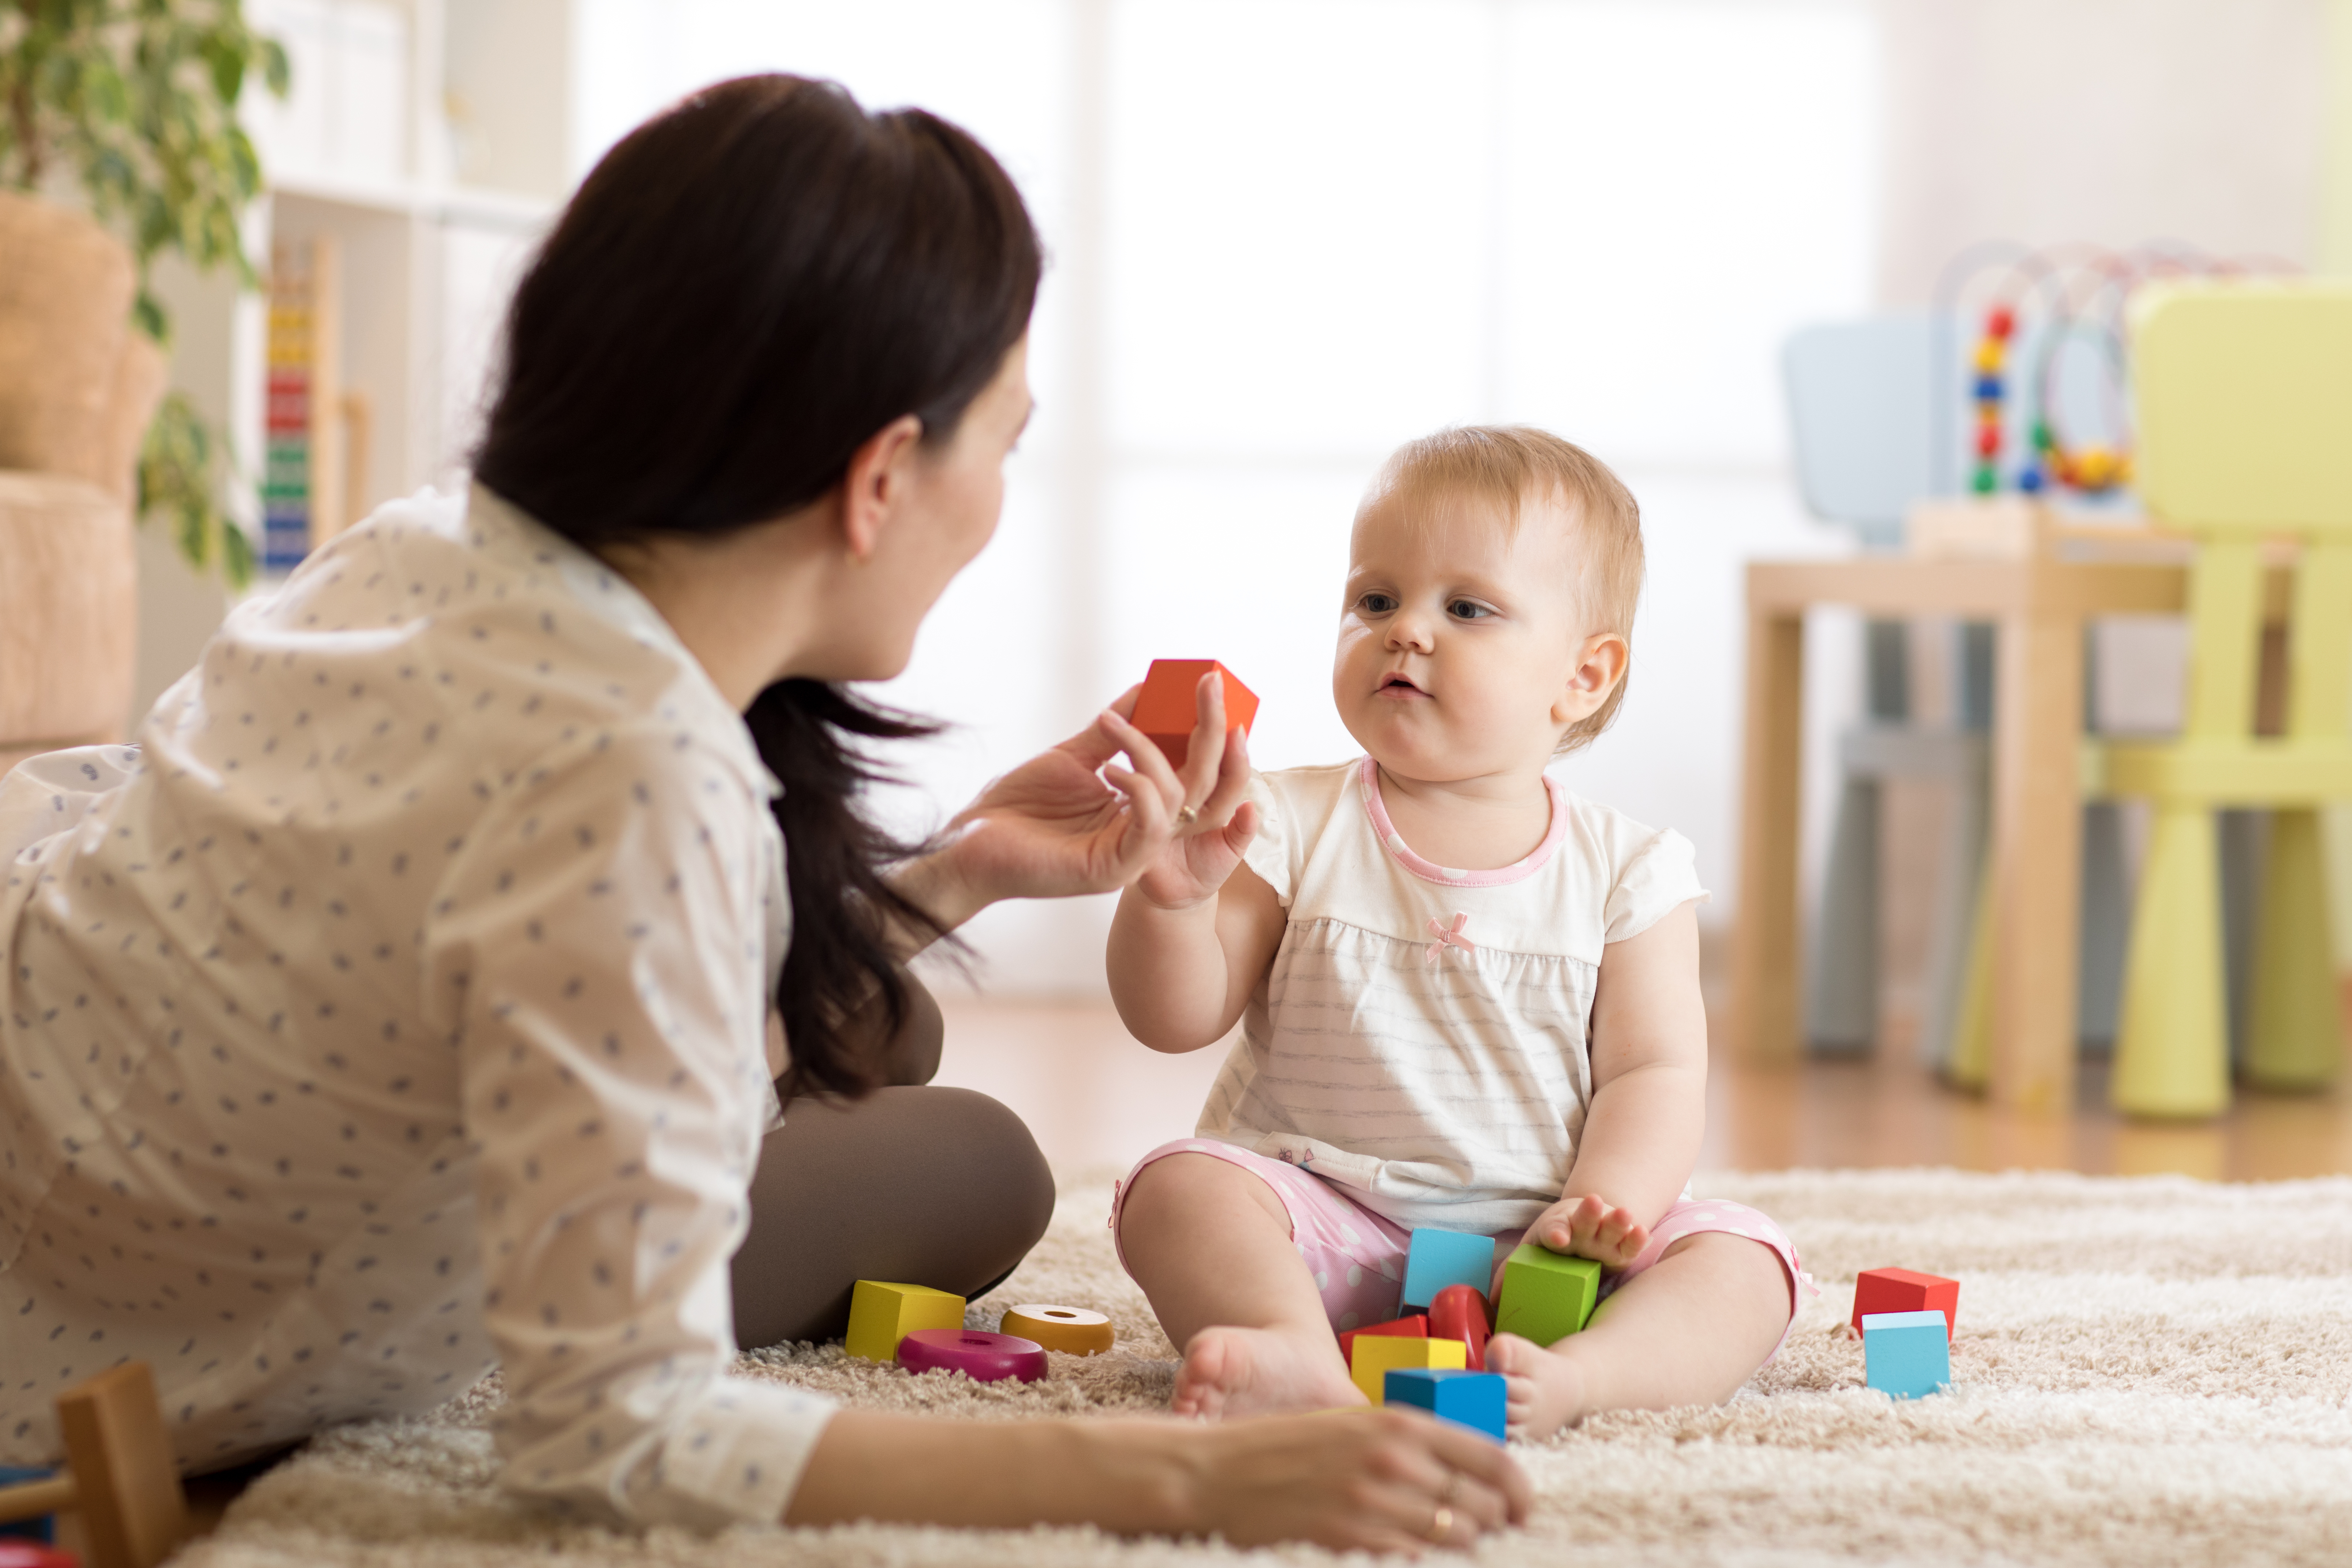 Une baby-sitter est photographiée en train de s'occuper d'un bébé | Source : Shutterstock